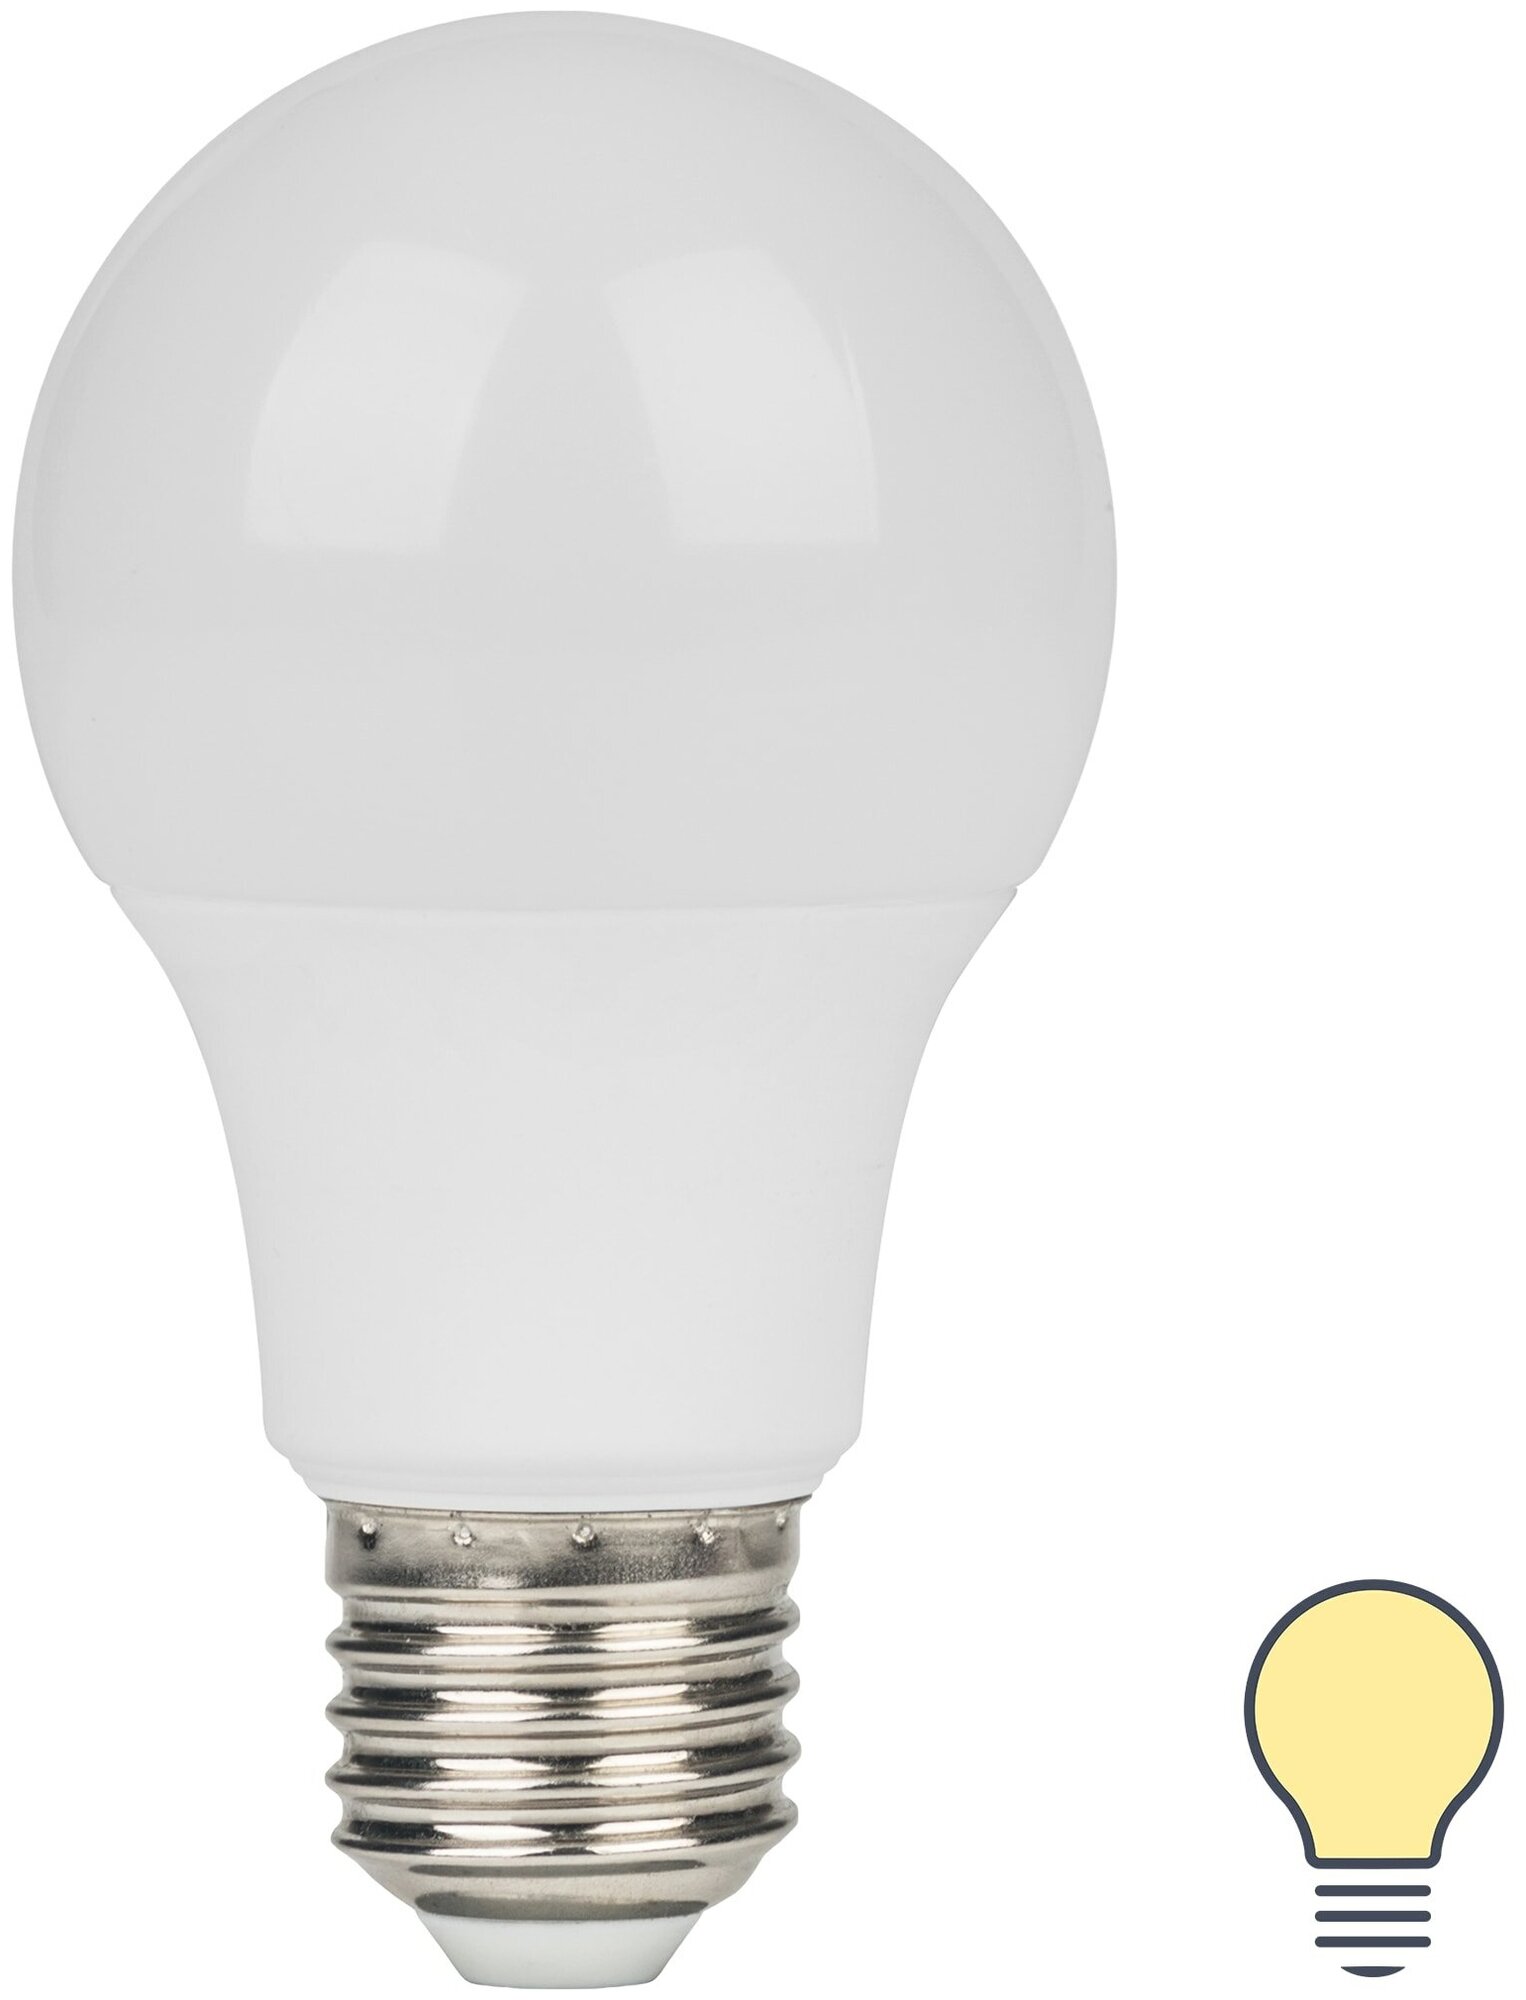 Лампа светодиодная Lexman E27 170-240 В 8.5 Вт груша матовая 750 лм теплый белый свет. Набор из 2 шт.